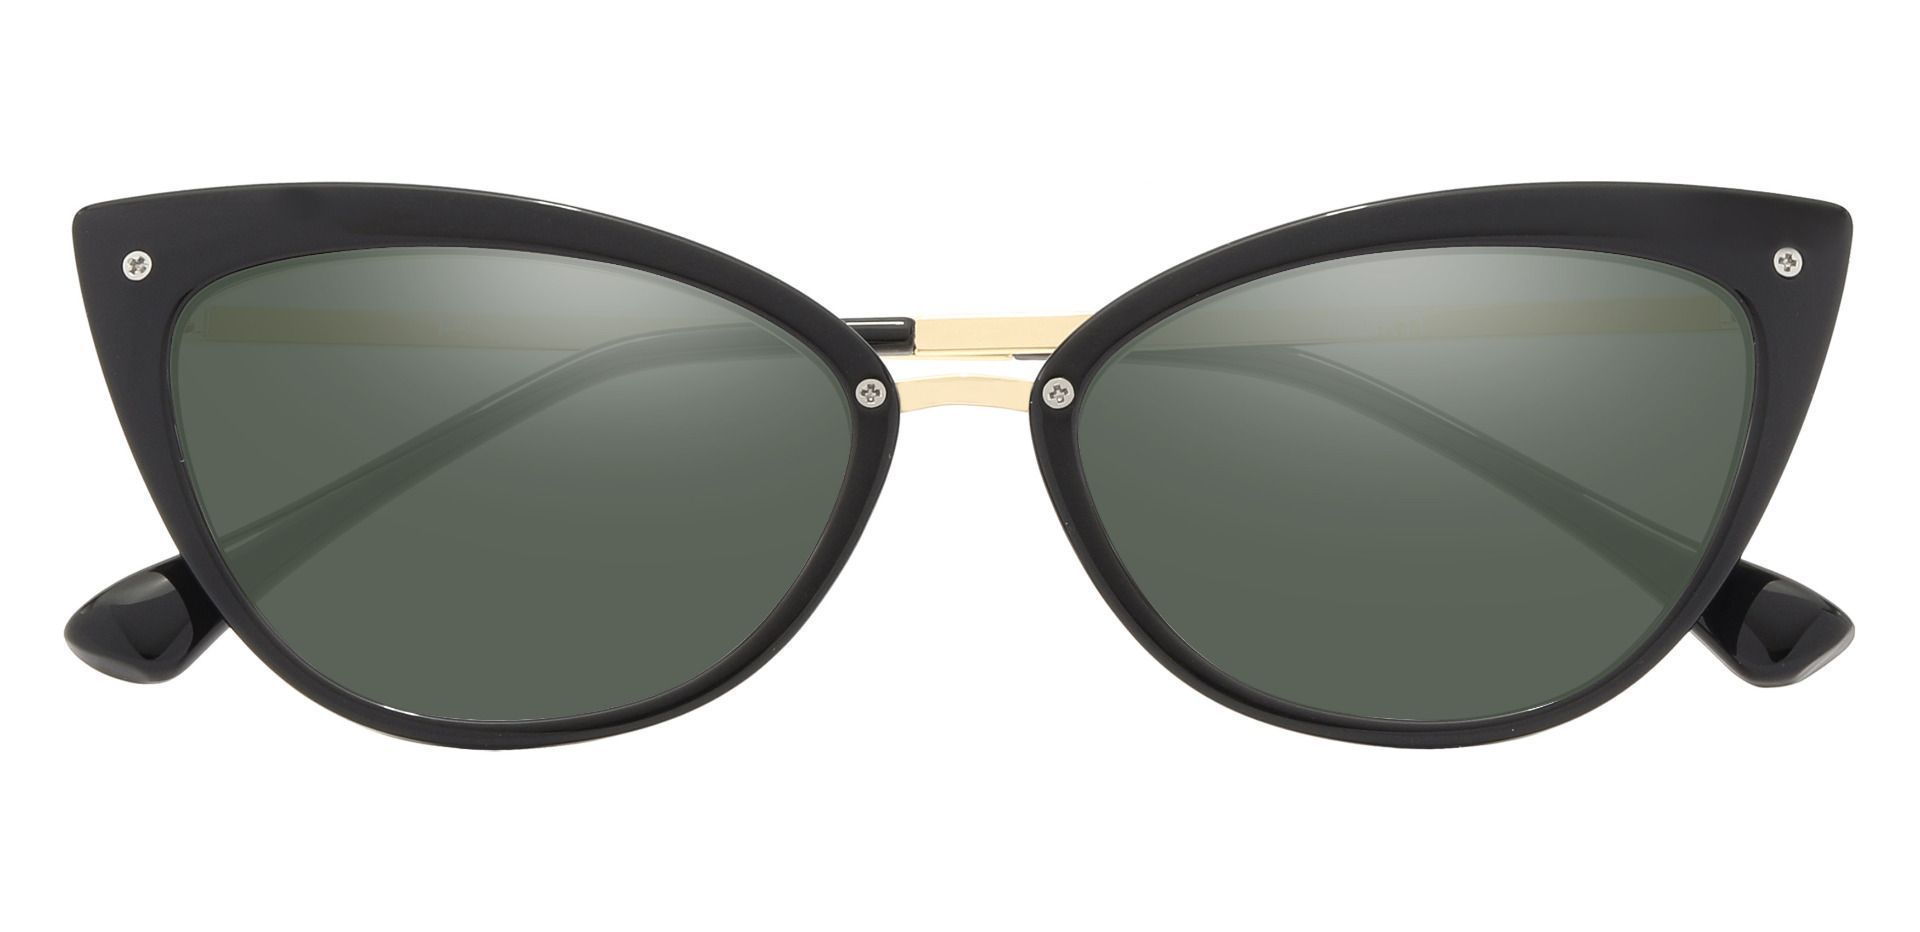 Glenda Cat Eye Prescription Sunglasses - Black Frame With Green Lenses